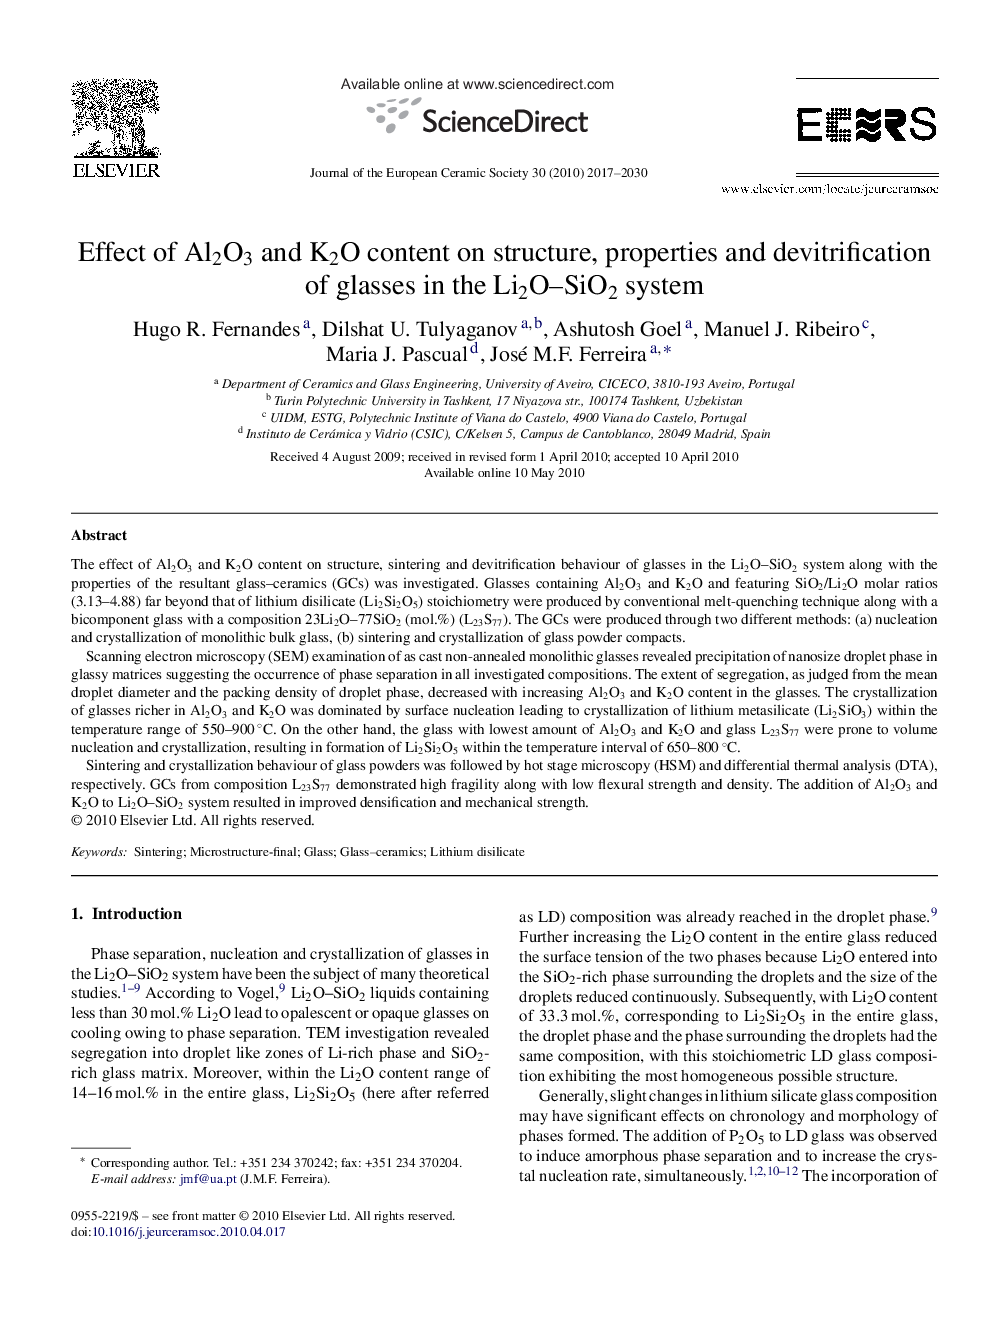 اثر محتوای آلومینا و کروم بر ساختار، خواص و جداسازی شیشه ها در سیستم Li2O-SiO2